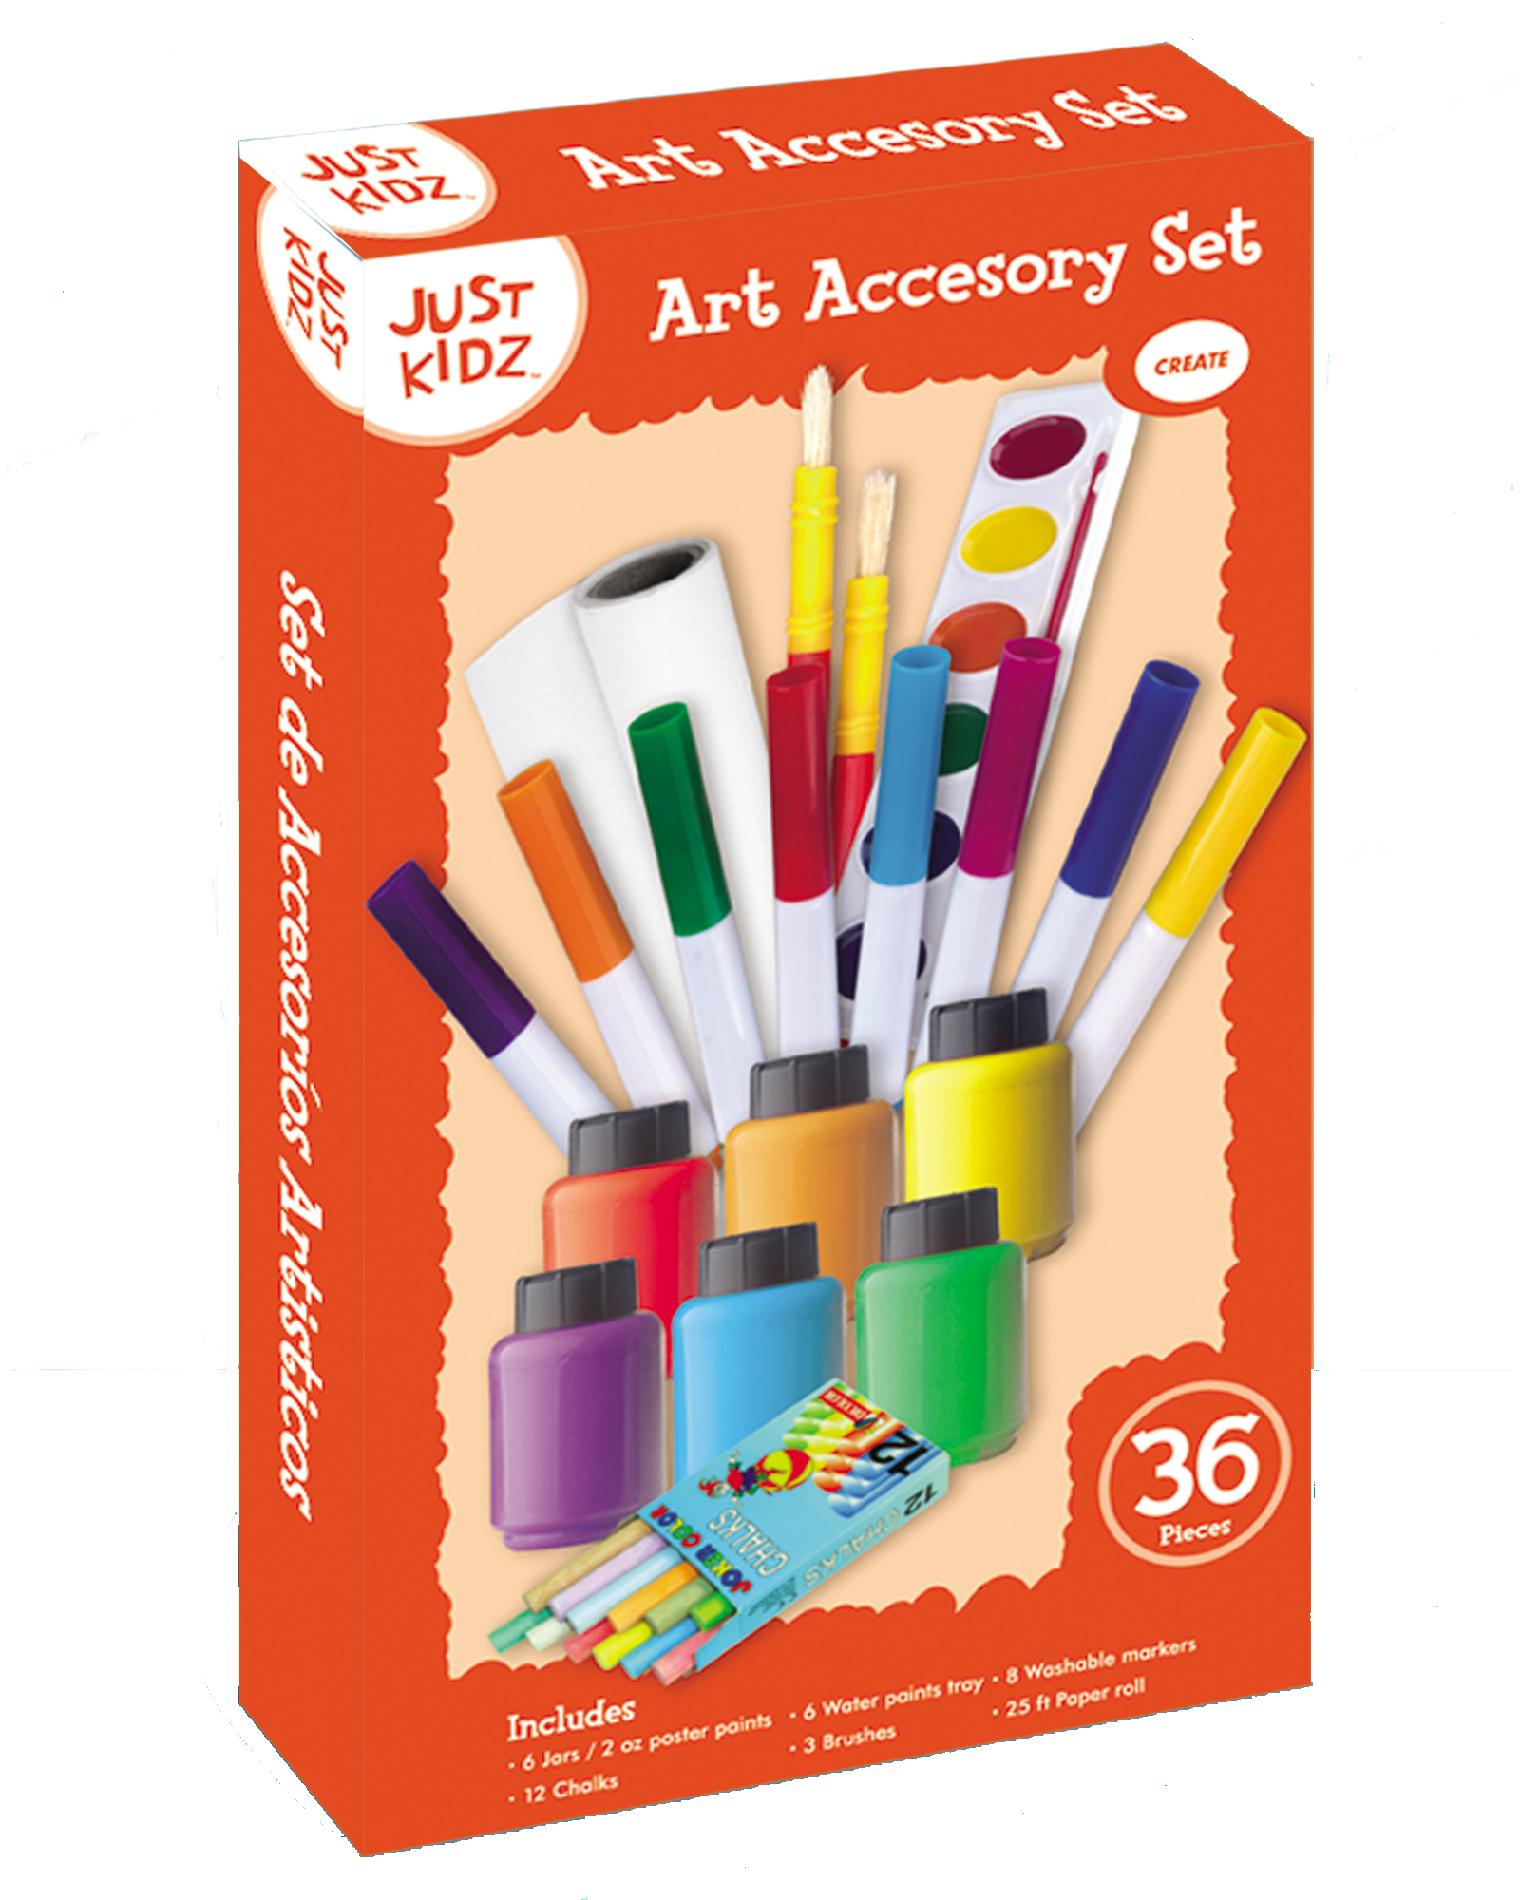 Just Kidz 36 Piece Art Accessory Set—$3.99